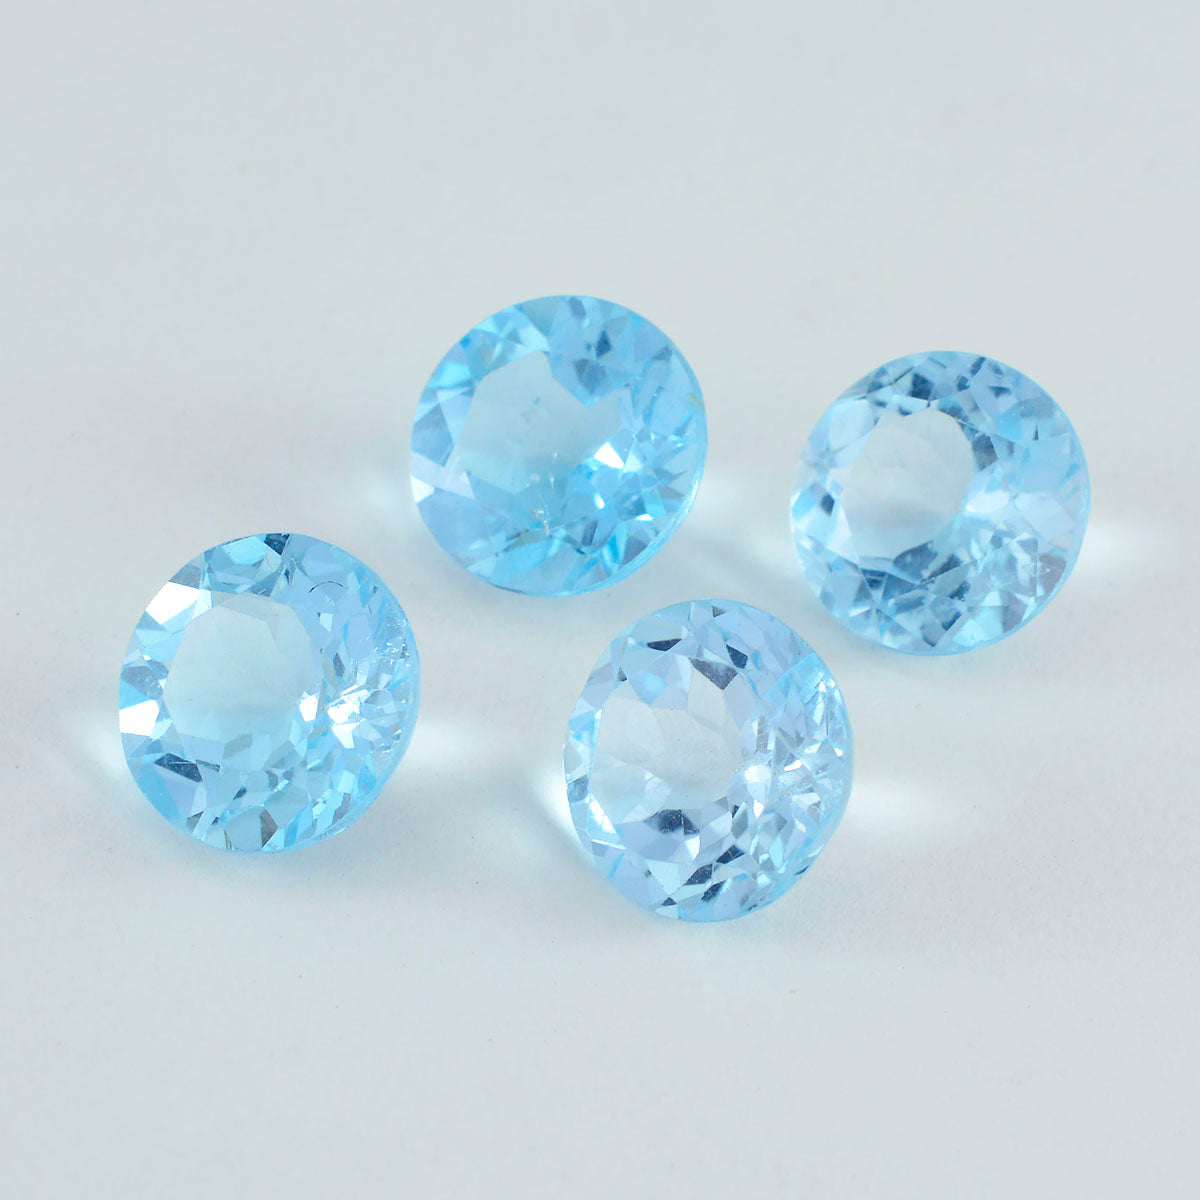 riyogems 1шт натуральный голубой топаз ограненный 12х12 мм круглая форма качество AAA россыпь драгоценные камни